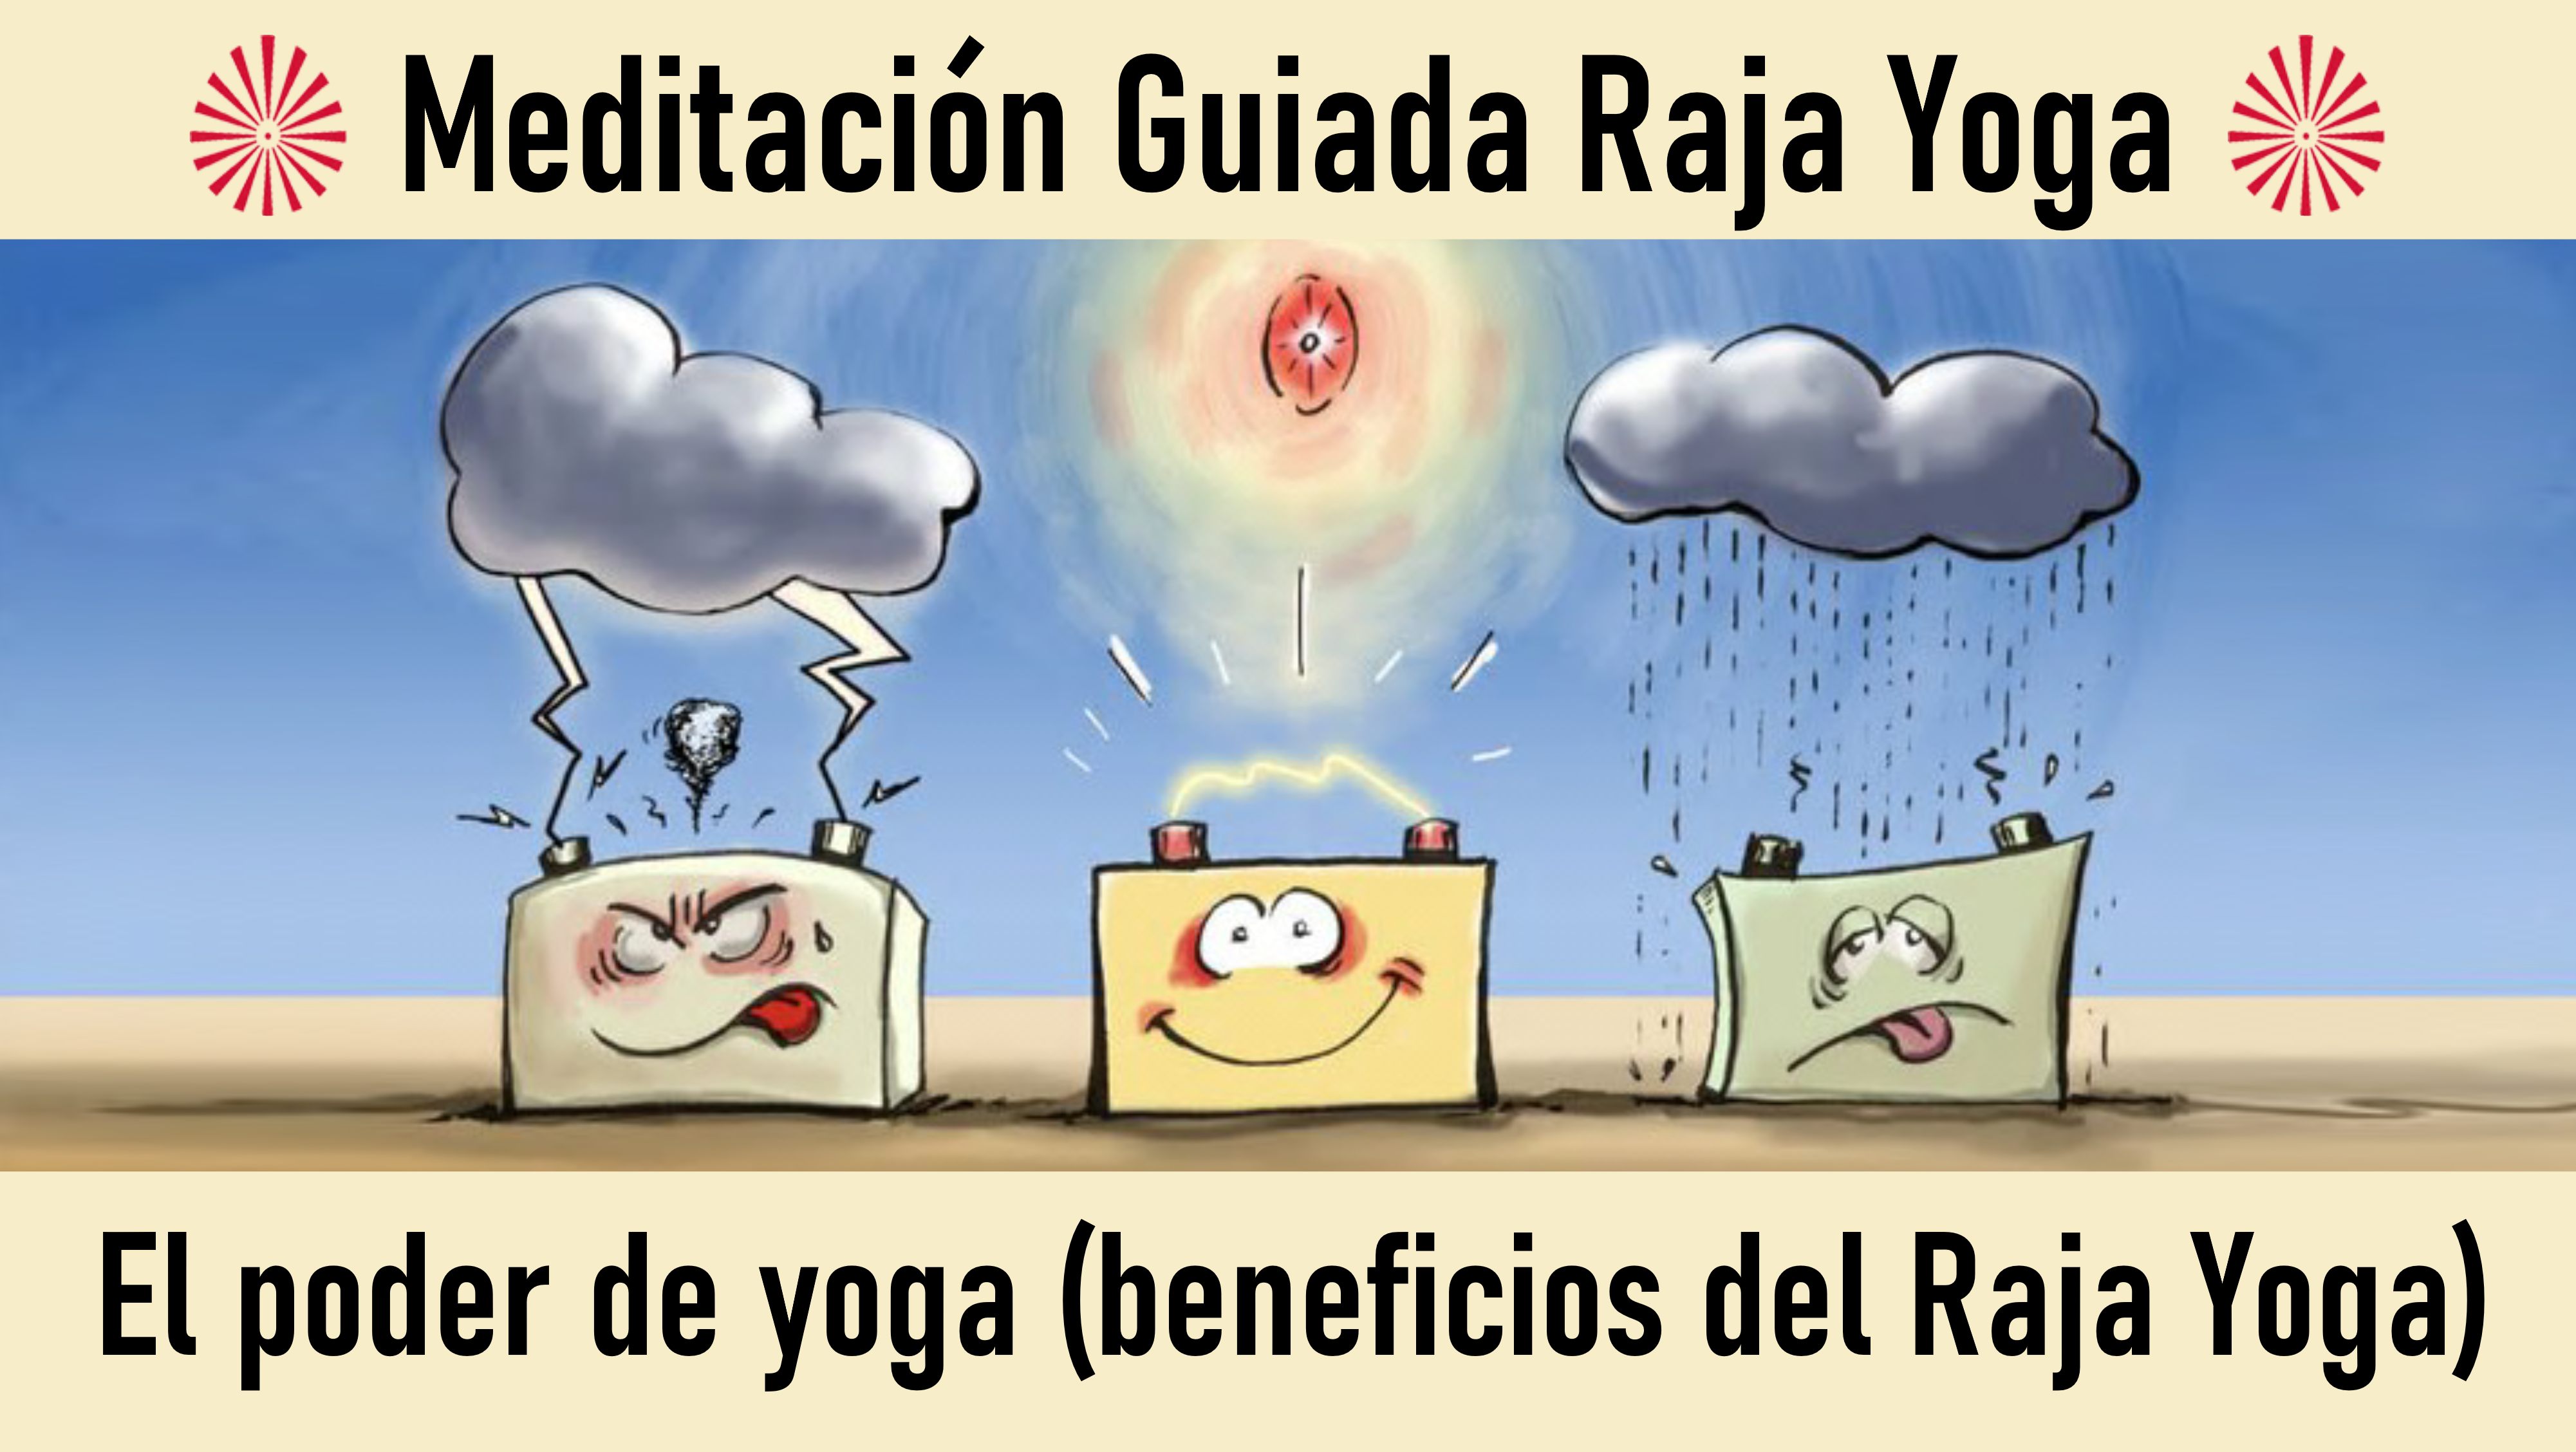 Meditación Raja Yoga: El poder de yoga-beneficios del Raja Yoga (23 Septiembre 2020) On-line desde Sevilla